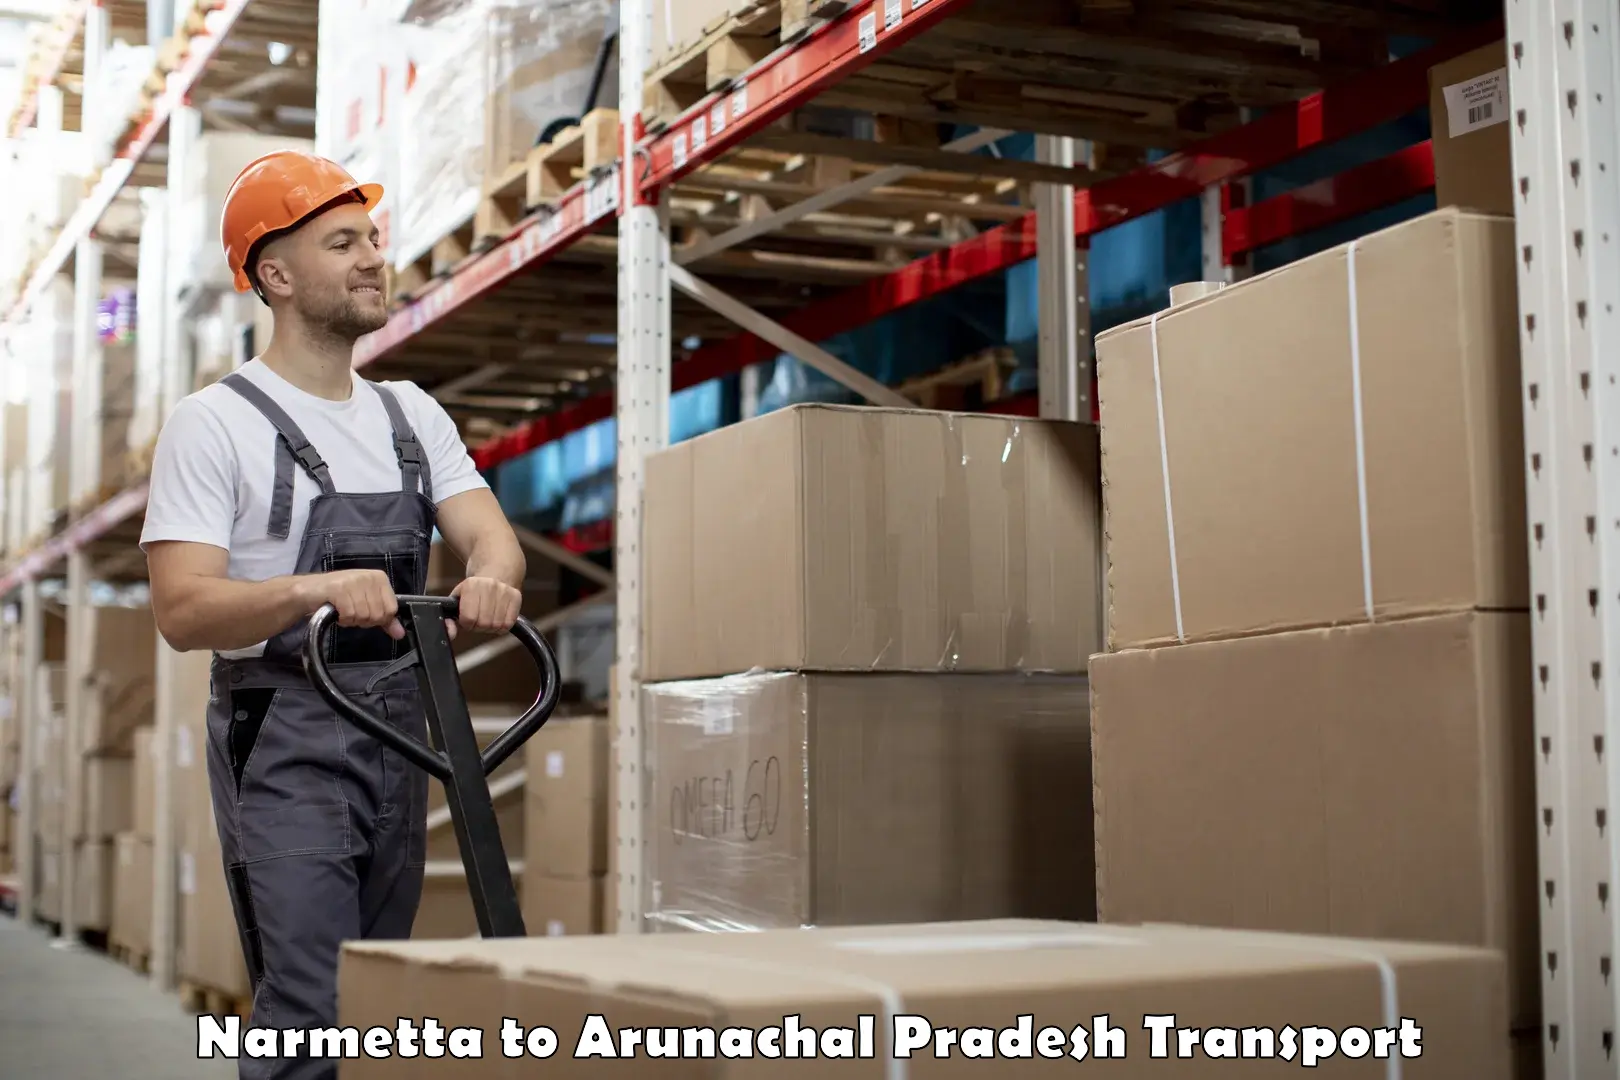 Delivery service Narmetta to Arunachal Pradesh